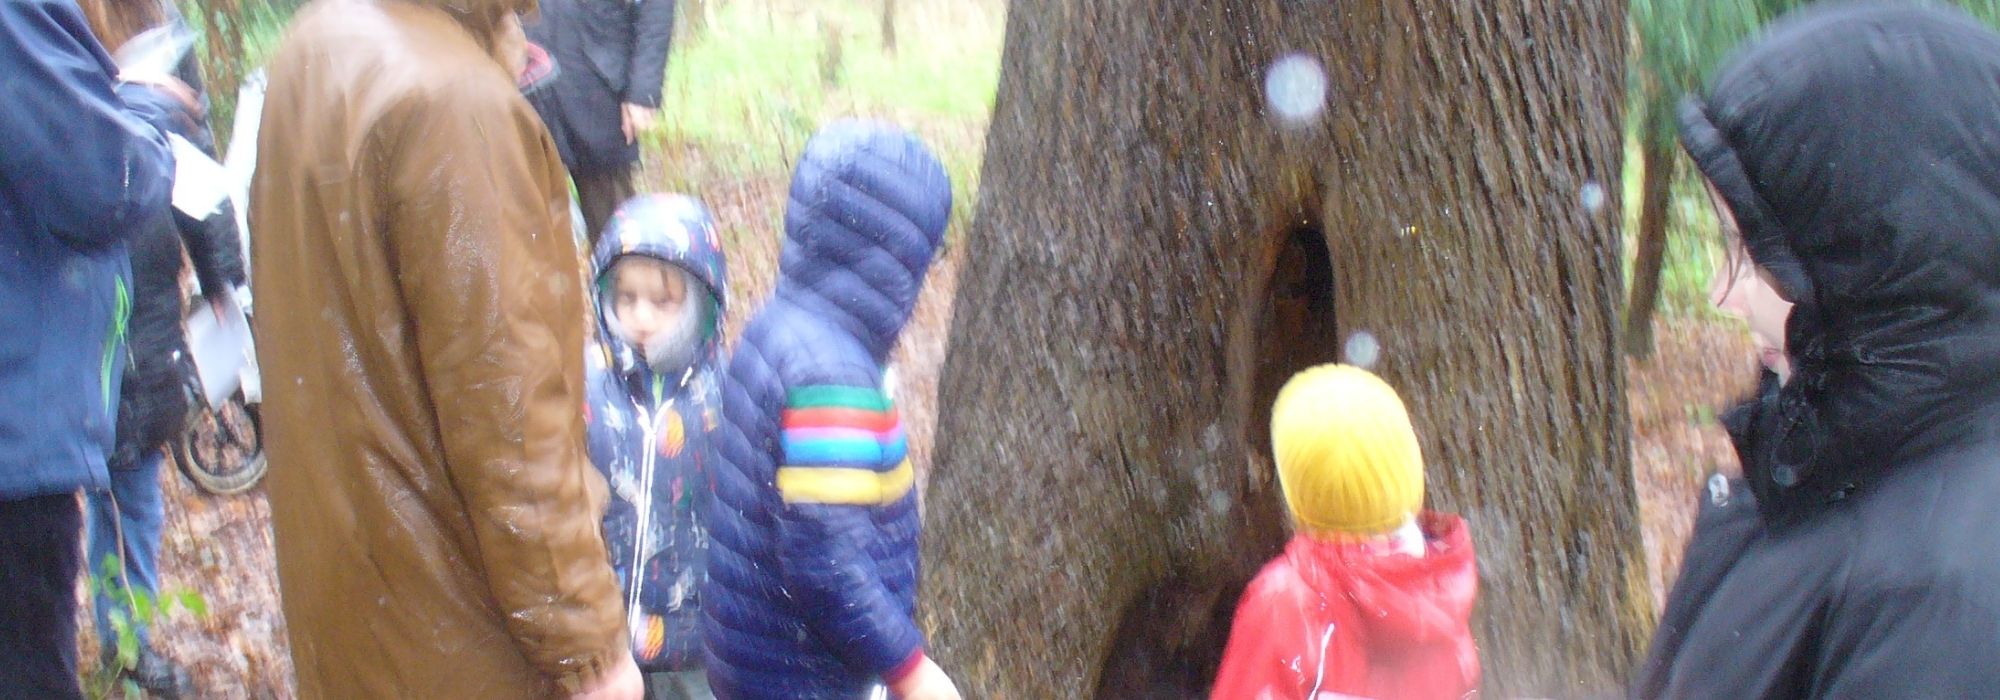 Children in woodland